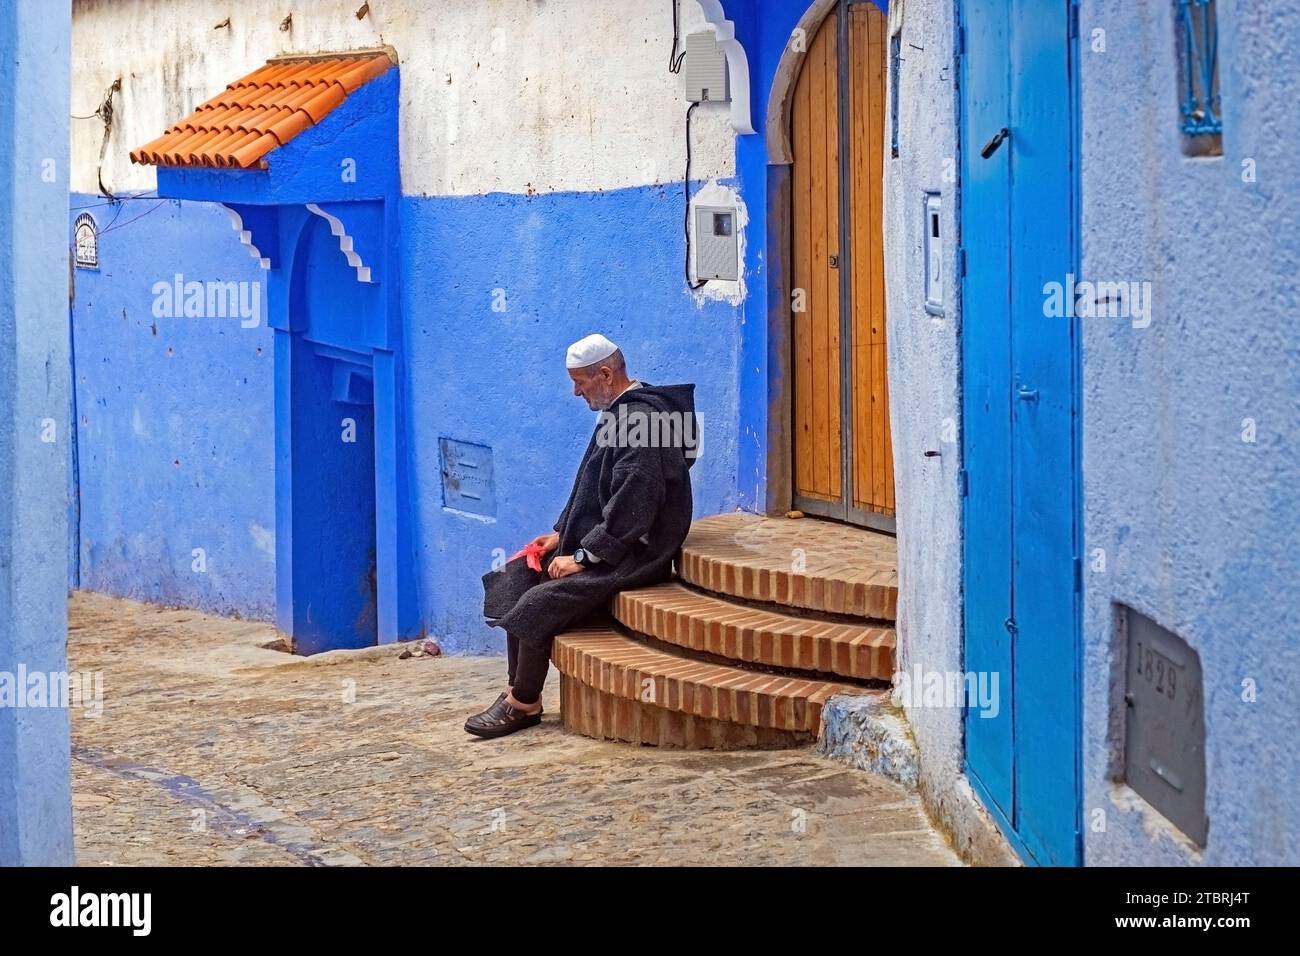 Homme musulman portant djellaba traditionnelle dans une ruelle avec des maisons bleues et des portes dans la médina / vieille ville historique de la ville Chefchaouen / Chaouen, Maroc Banque D'Images